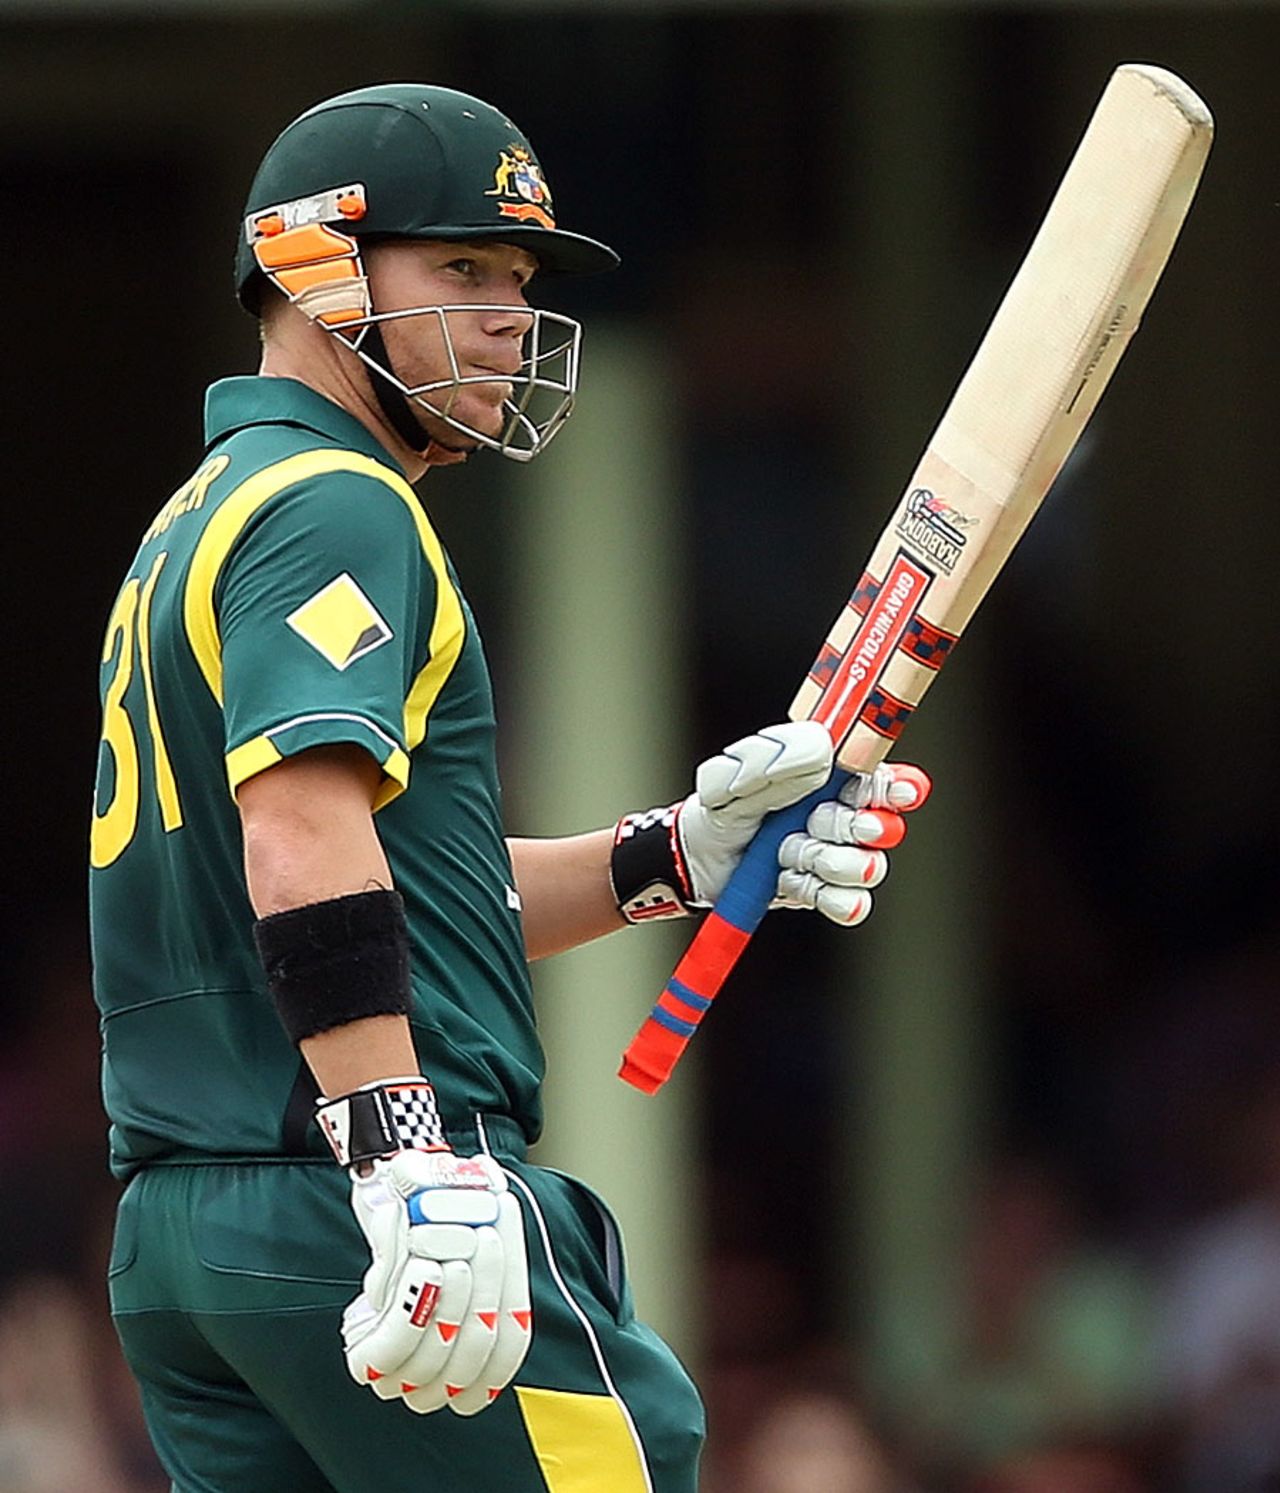 David Warner scored a fifty but got out soon after, Australia v Sri Lanka, 4th ODI, Sydney, January 20, 2013